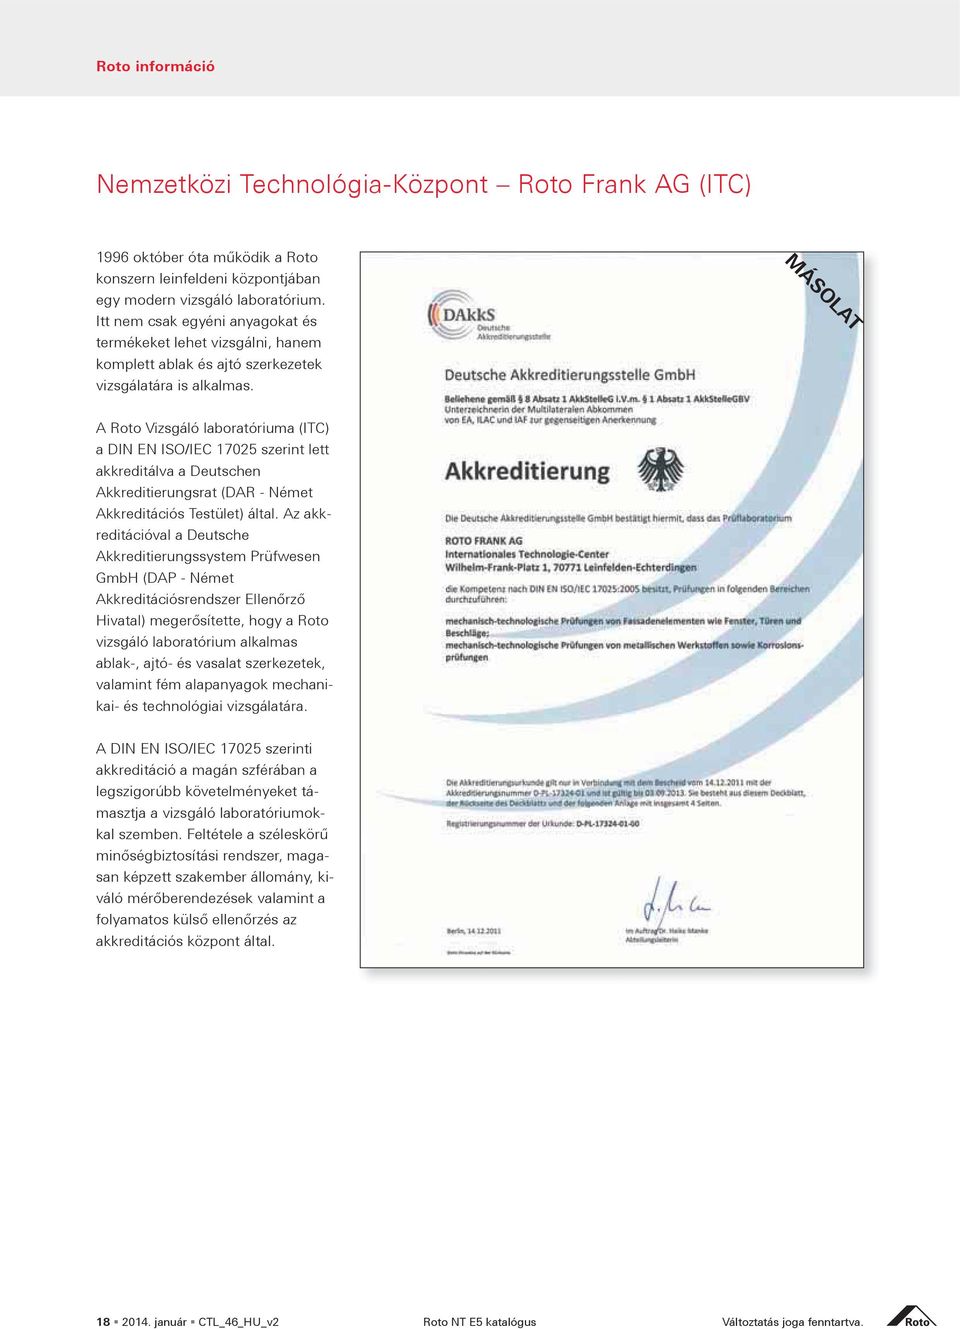 M OLAT A Roto Vizsgáló laboratóriuma (ITC) akkreditálva a Deutschen Akkreditierungsrat (DAR - Német reditációval a Deutsche GmbH (DAP - Német vizsgáló